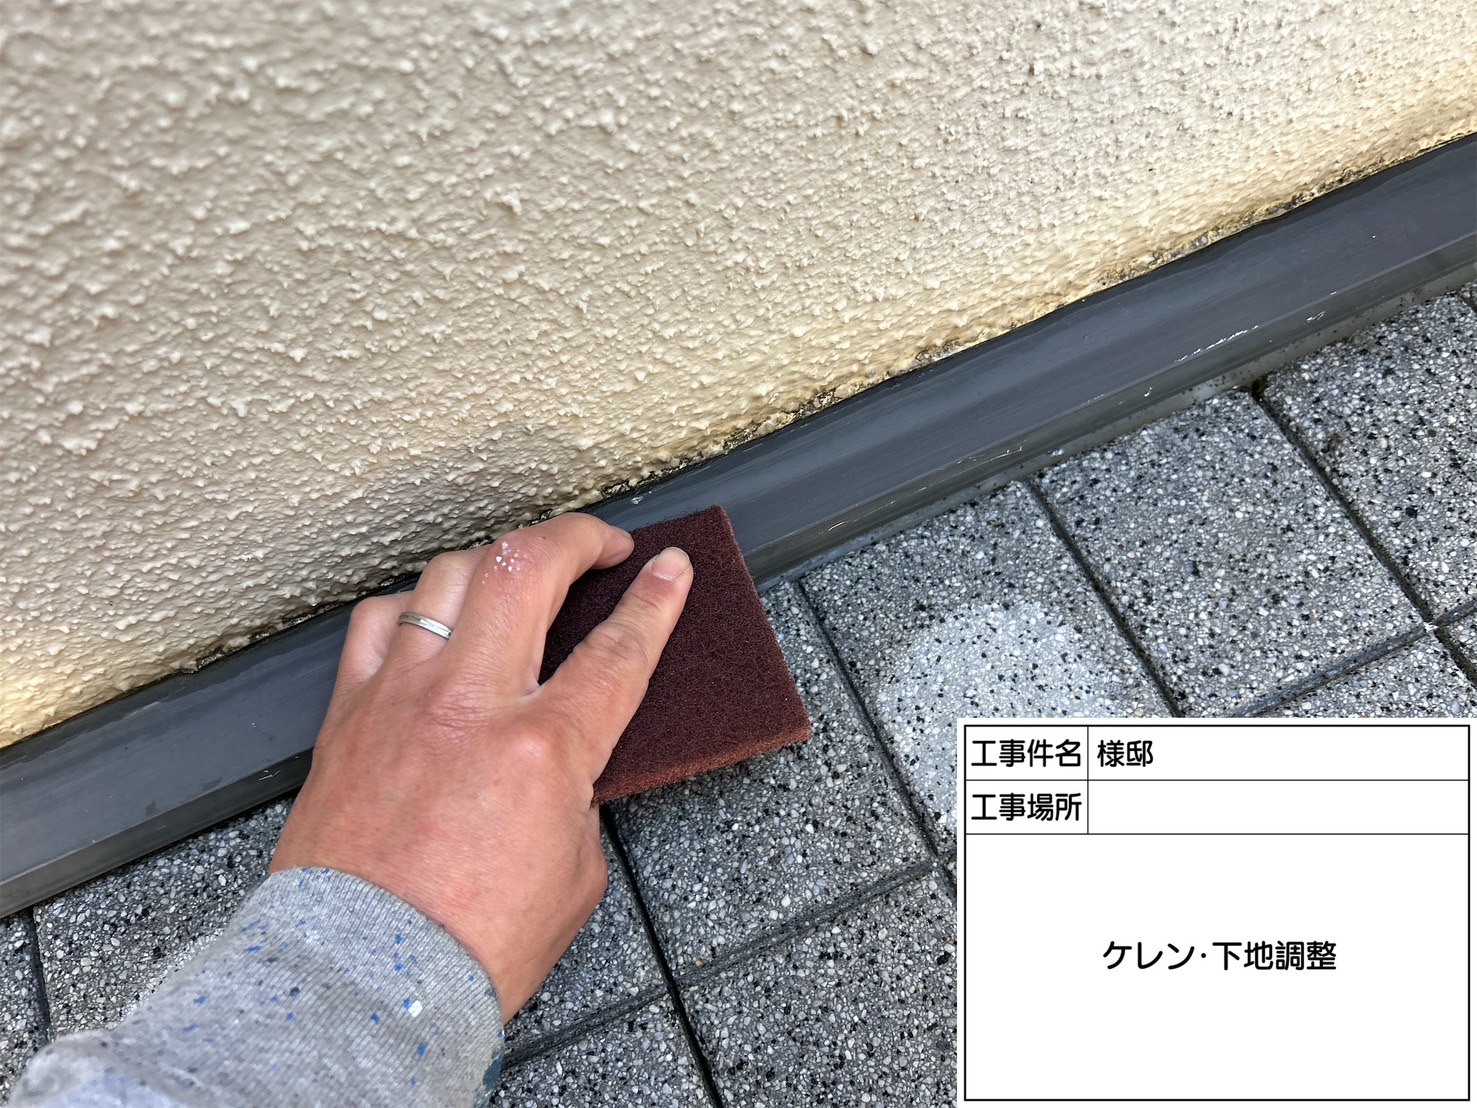 佐賀県三養基郡基山町小倉のS様邸で外壁の汚れやコケを除去し、ひび割れの補修も行った上で外壁塗装工事を行っていきます。3/26着工です。【ご来店より】